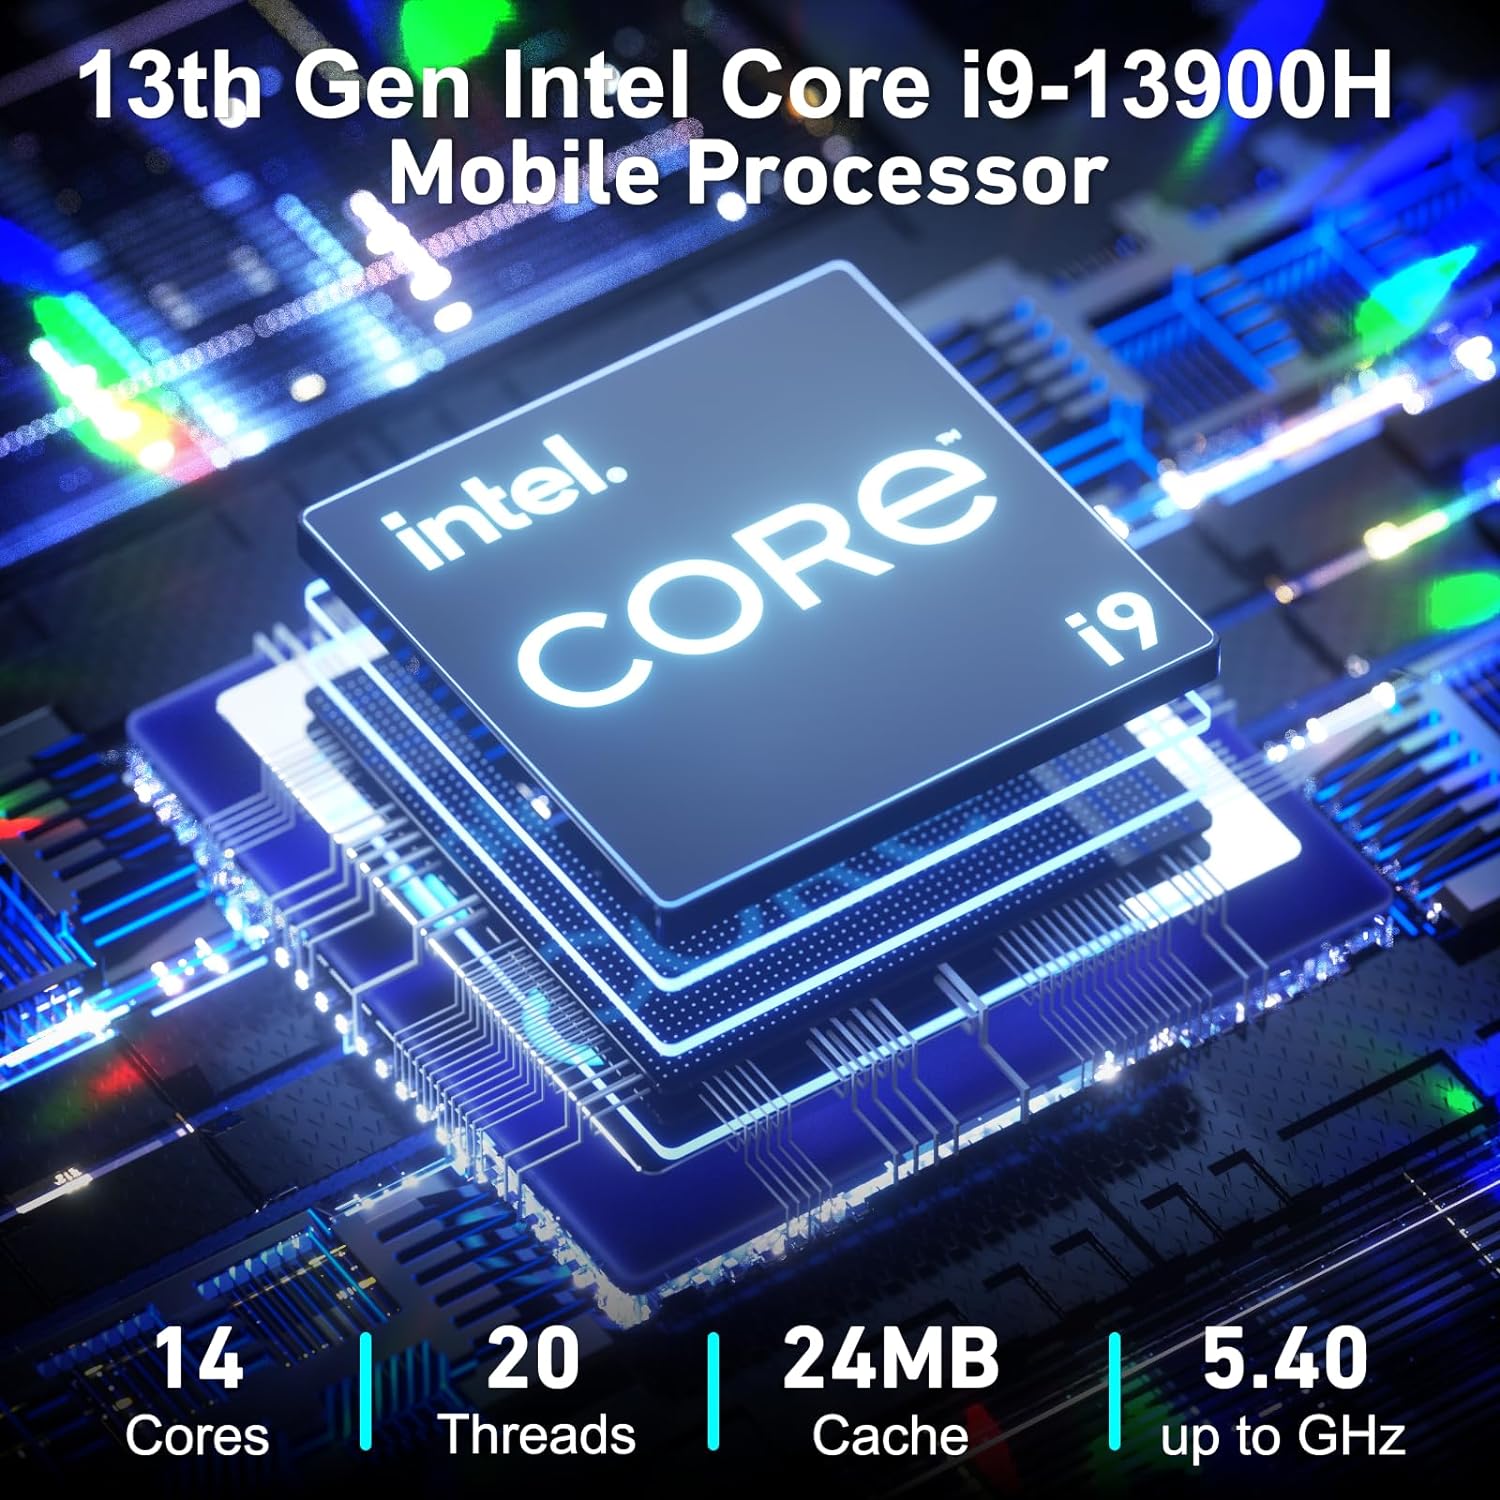 GEEKOM Mini PC Mini IT13, 13th Gen Intel i9-13900H NUC13 Mini Computers(14 Cores,20 Threads) 32GB DDR4/2TB PCIe Gen 4 SSD Windows 11 Pro Desktop PC Support Wi-Fi 6E/Bluetooth 5.2/USB 4.0/2.5G LAN/8K